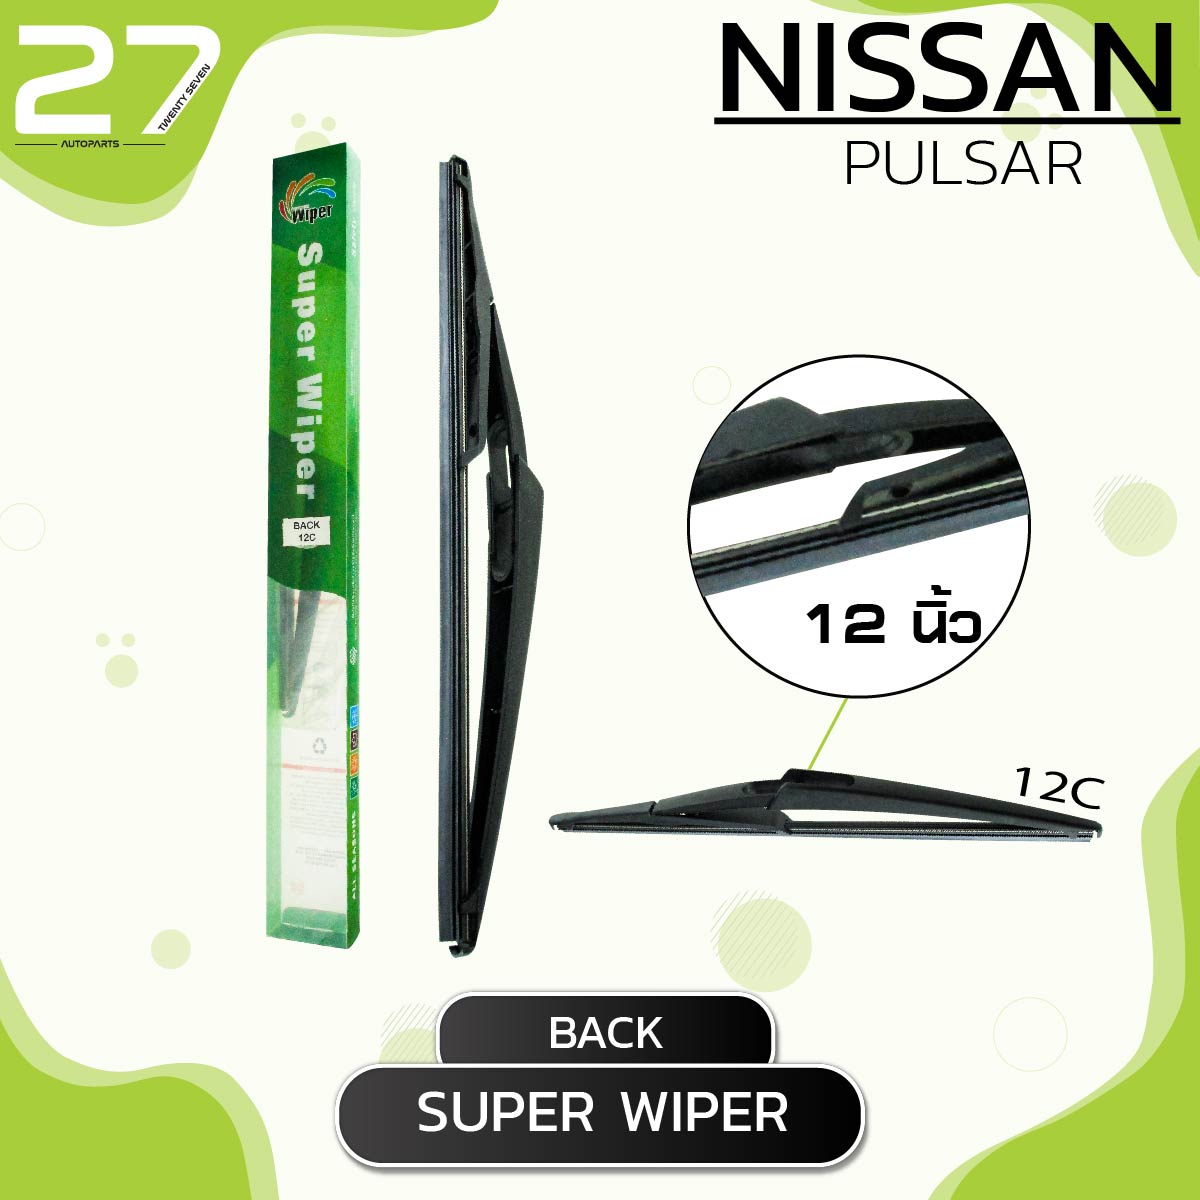 ใบปัดน้ำฝนหลัง NISSAN PULSAR / ขนาด 12 (นิ้ว) /  รหัส 12C / SUPER WIPER